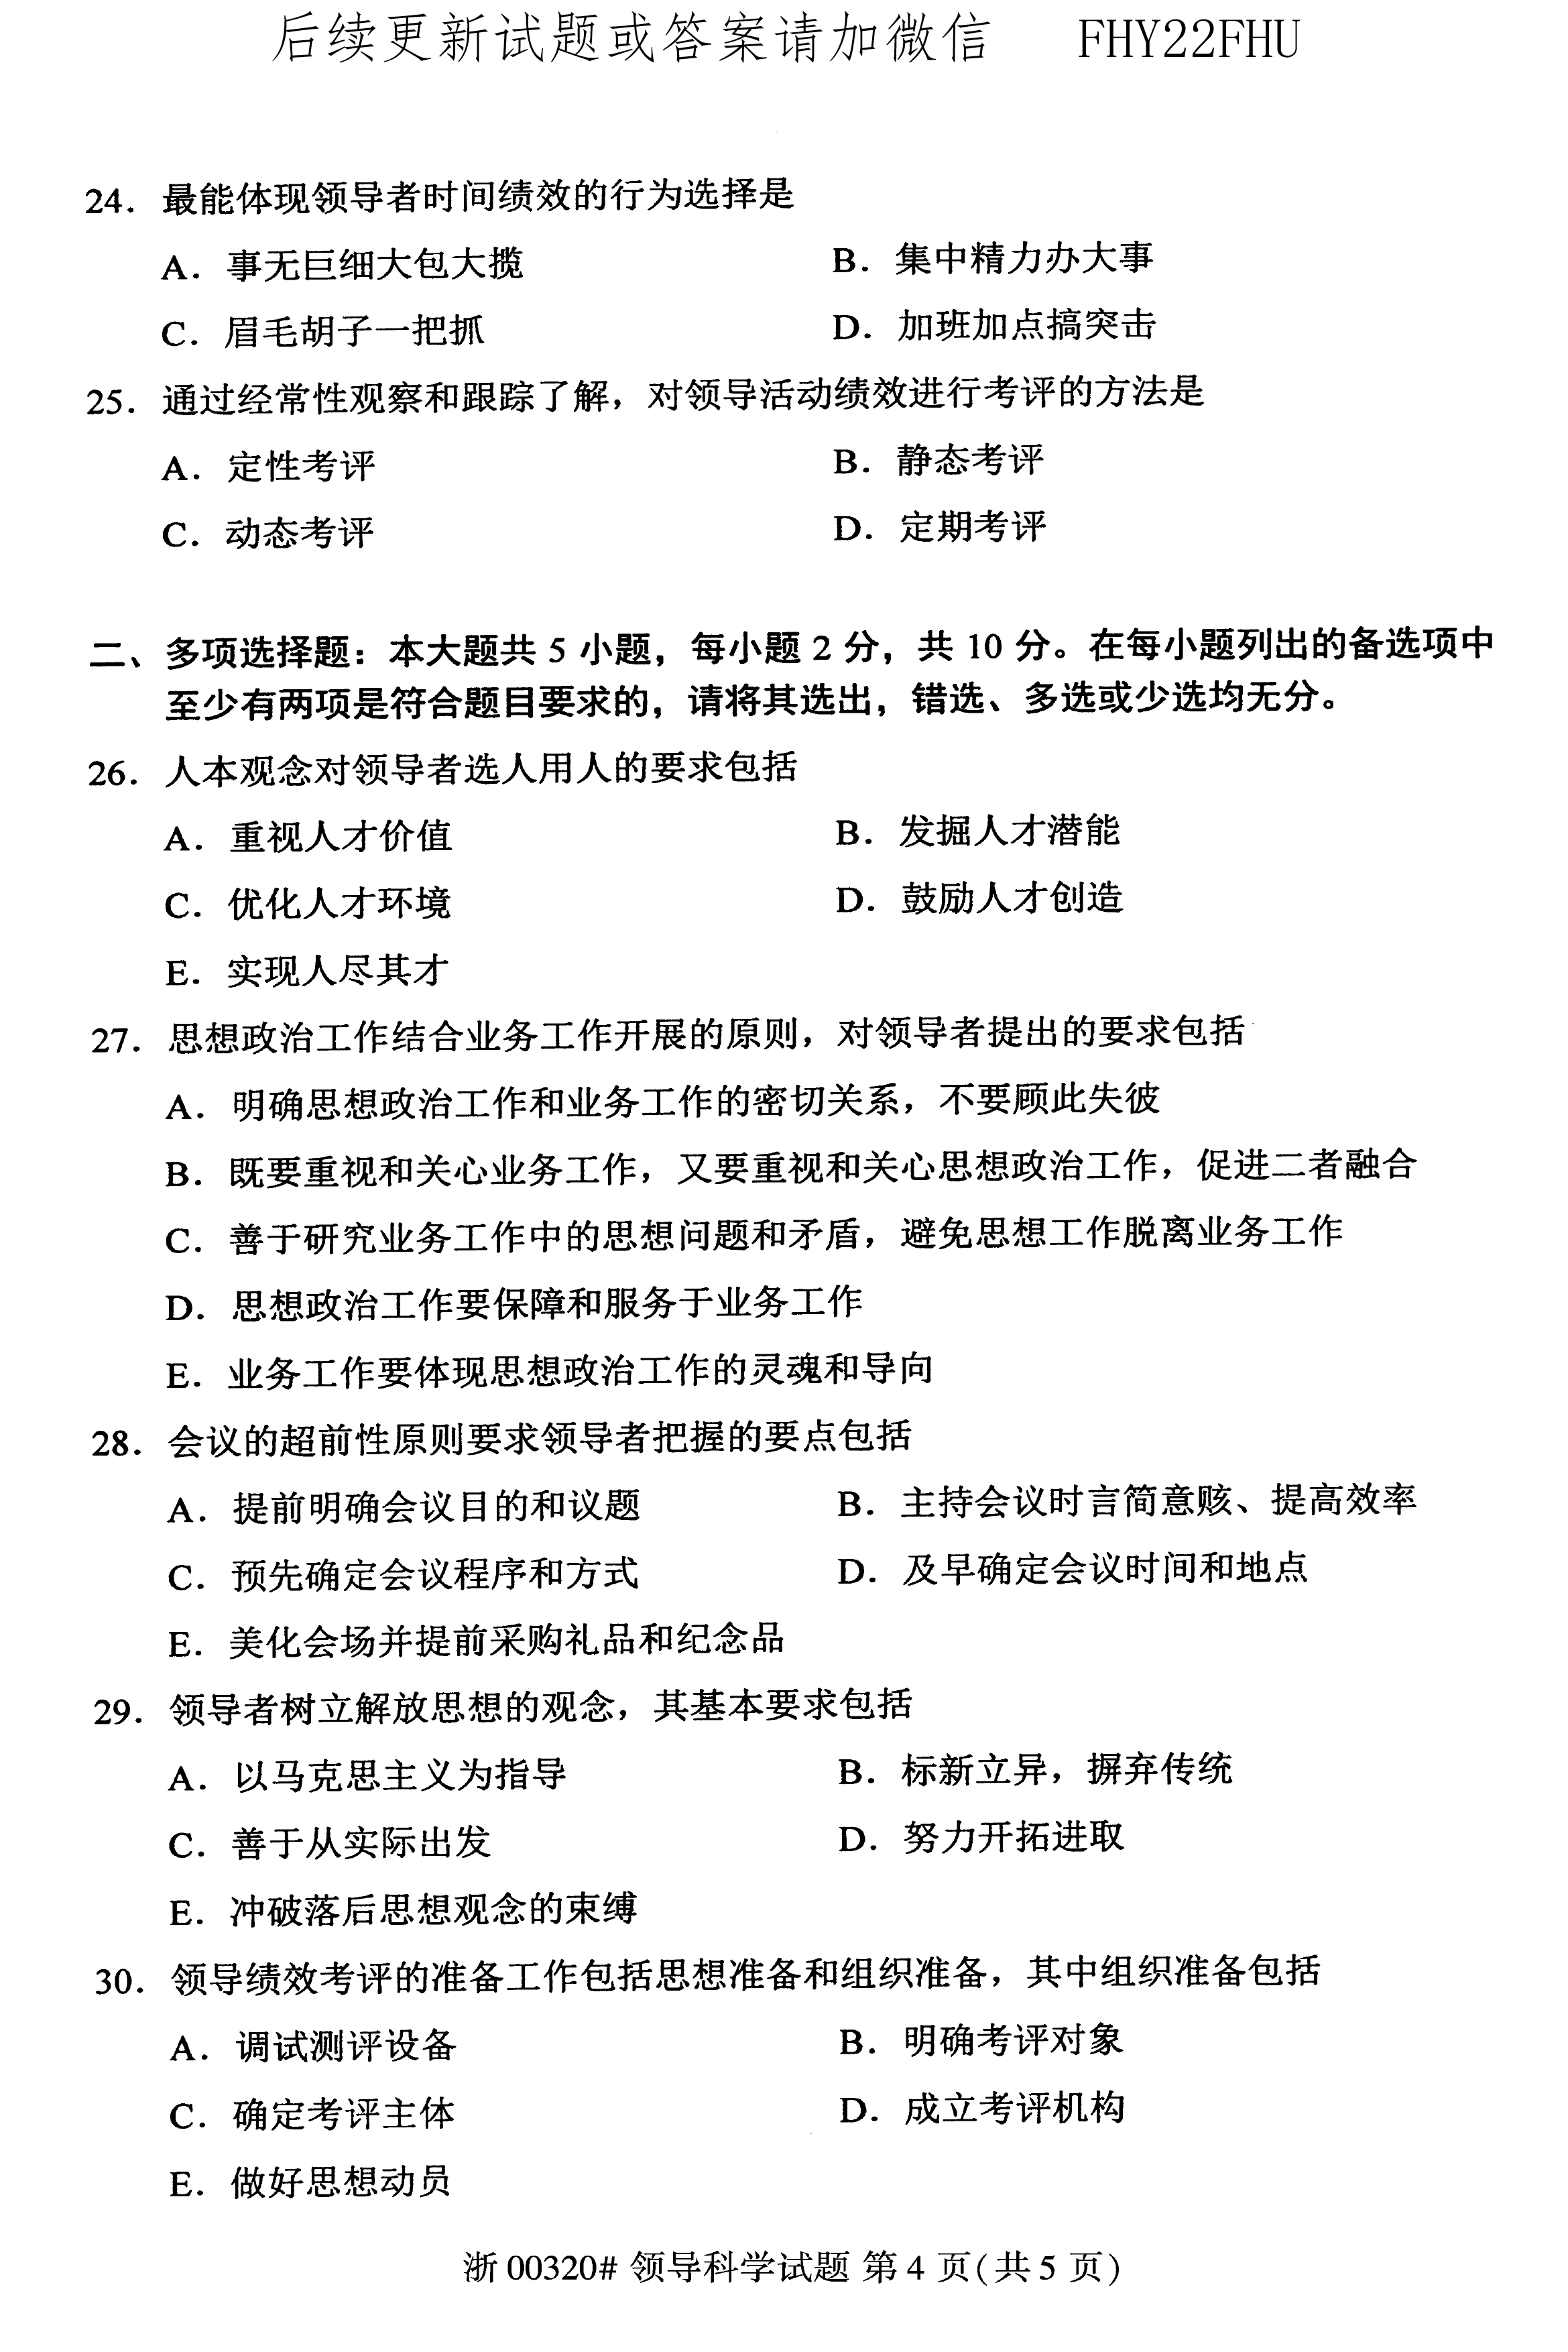 2020年10月贵州省自学考试00320领导科学